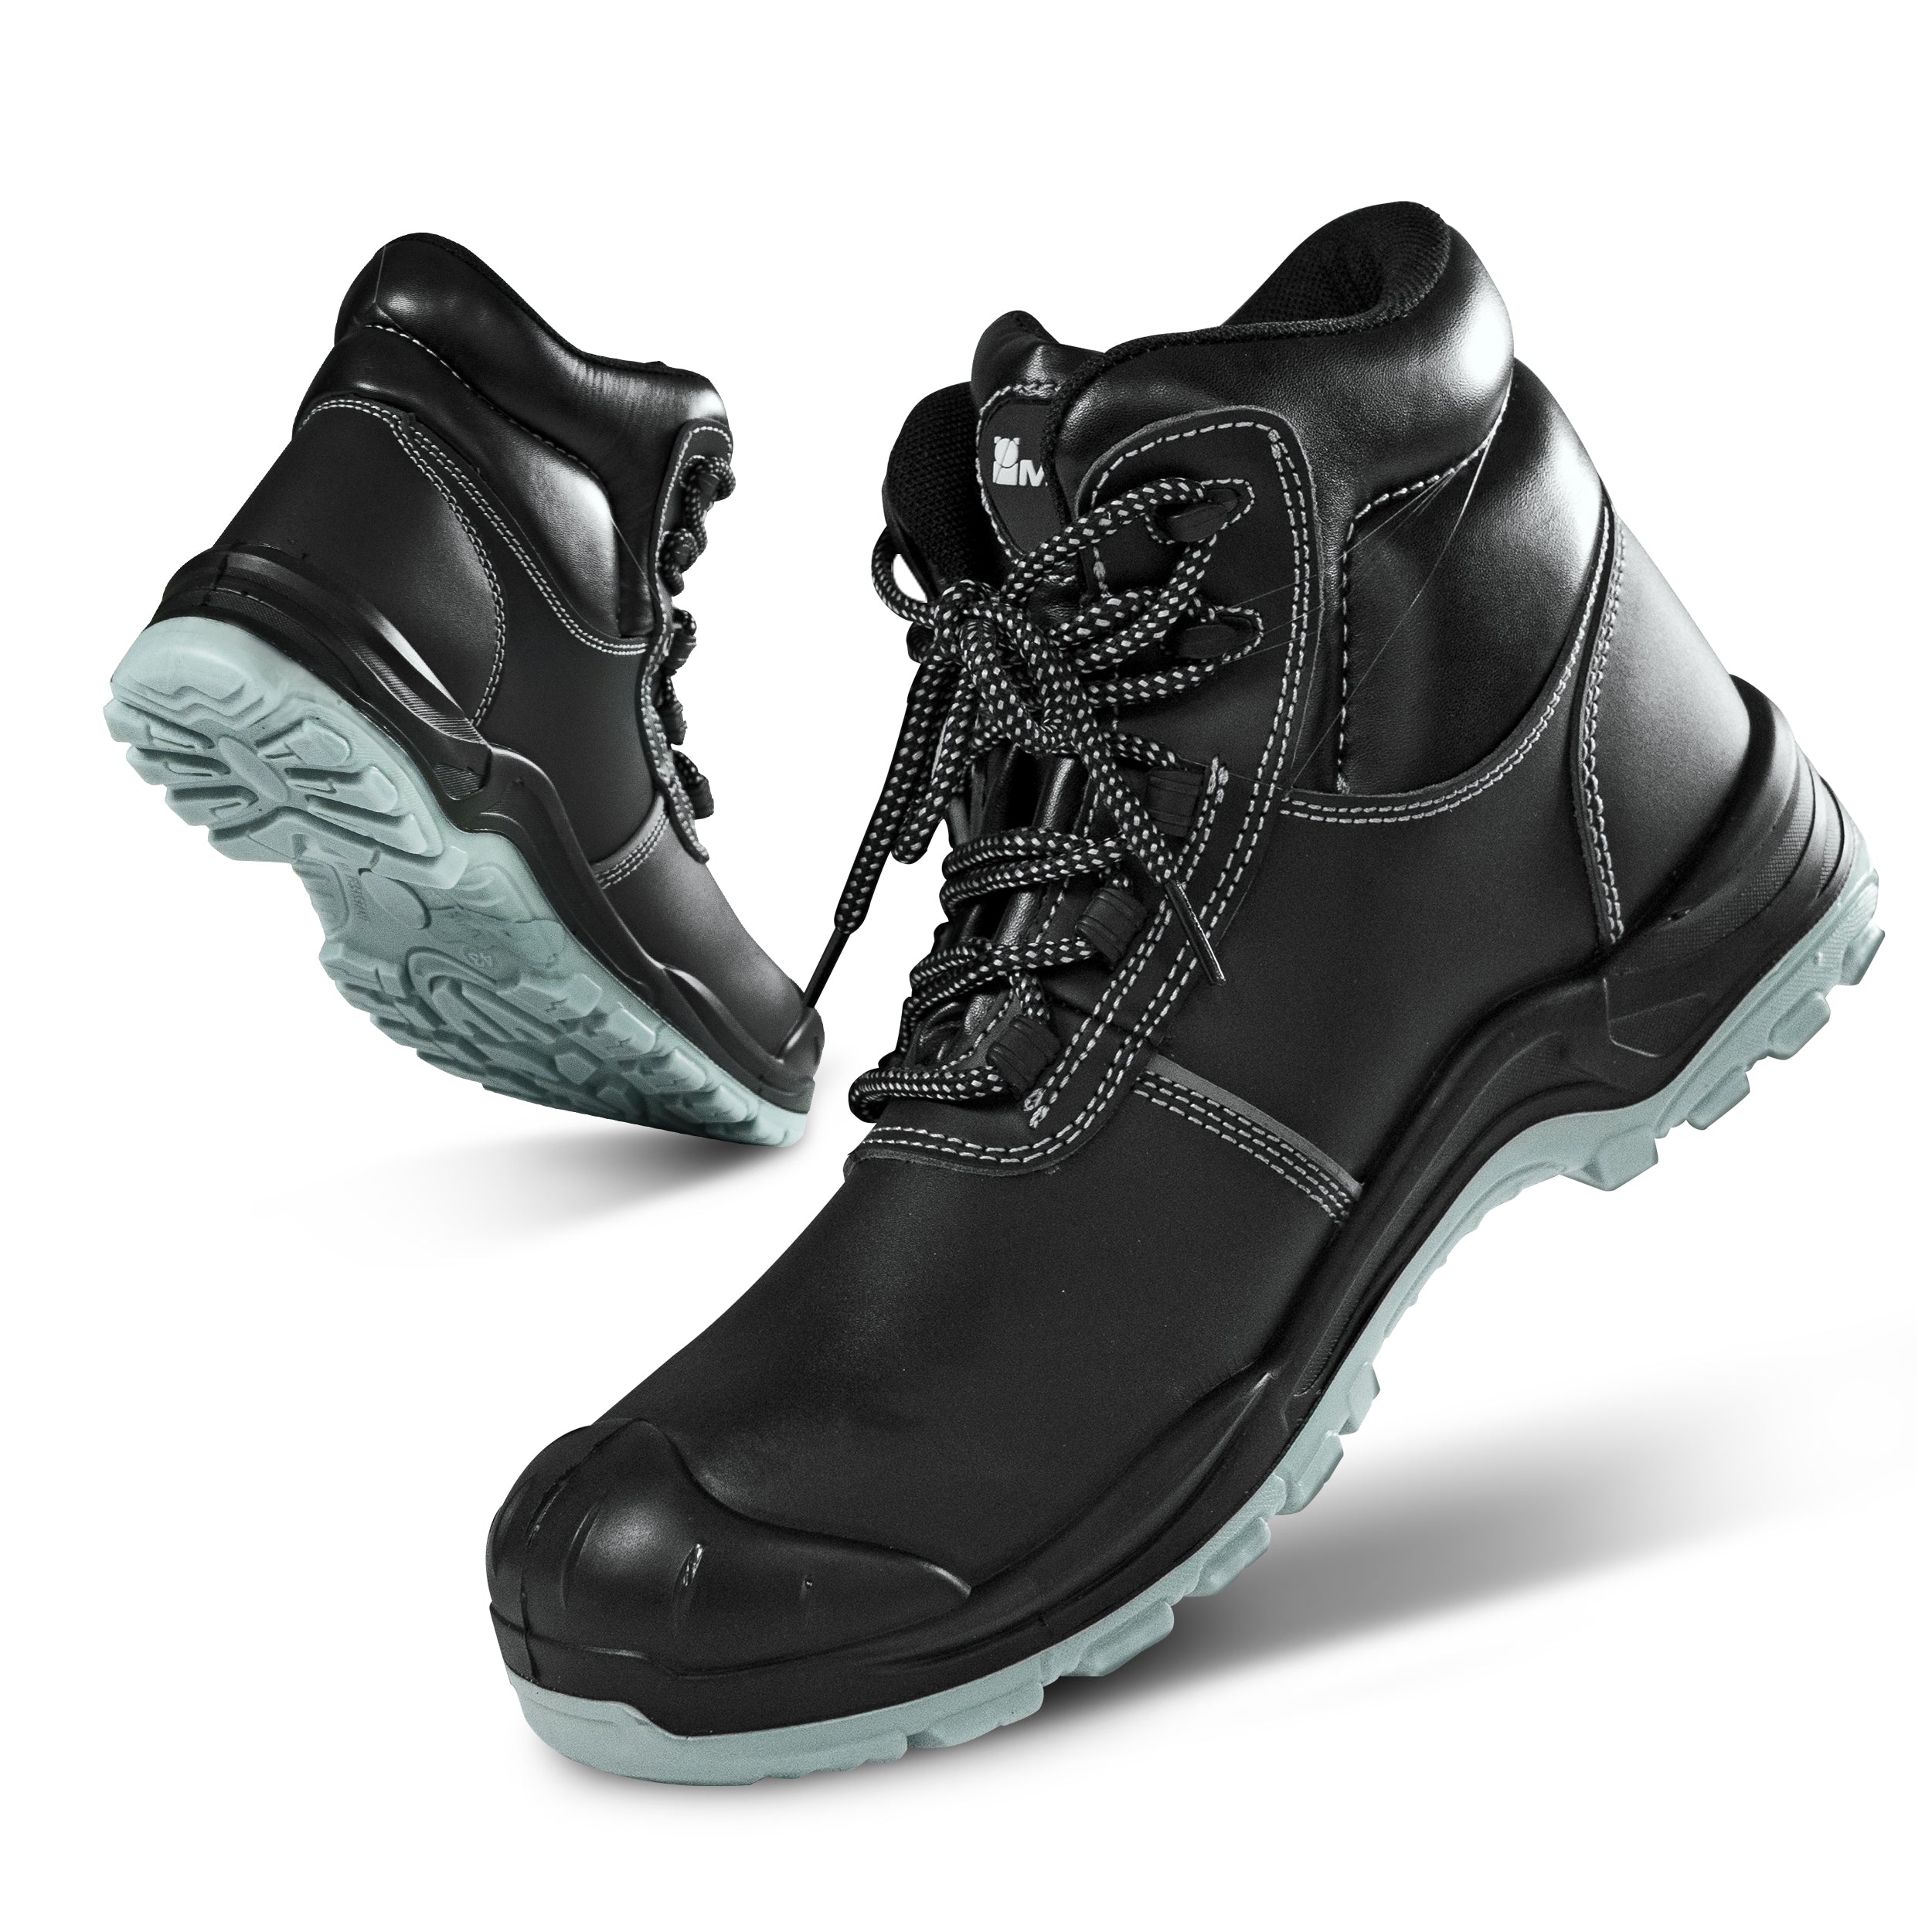 Magpie Rockies - Premium Steel Toe Work Boots for Men